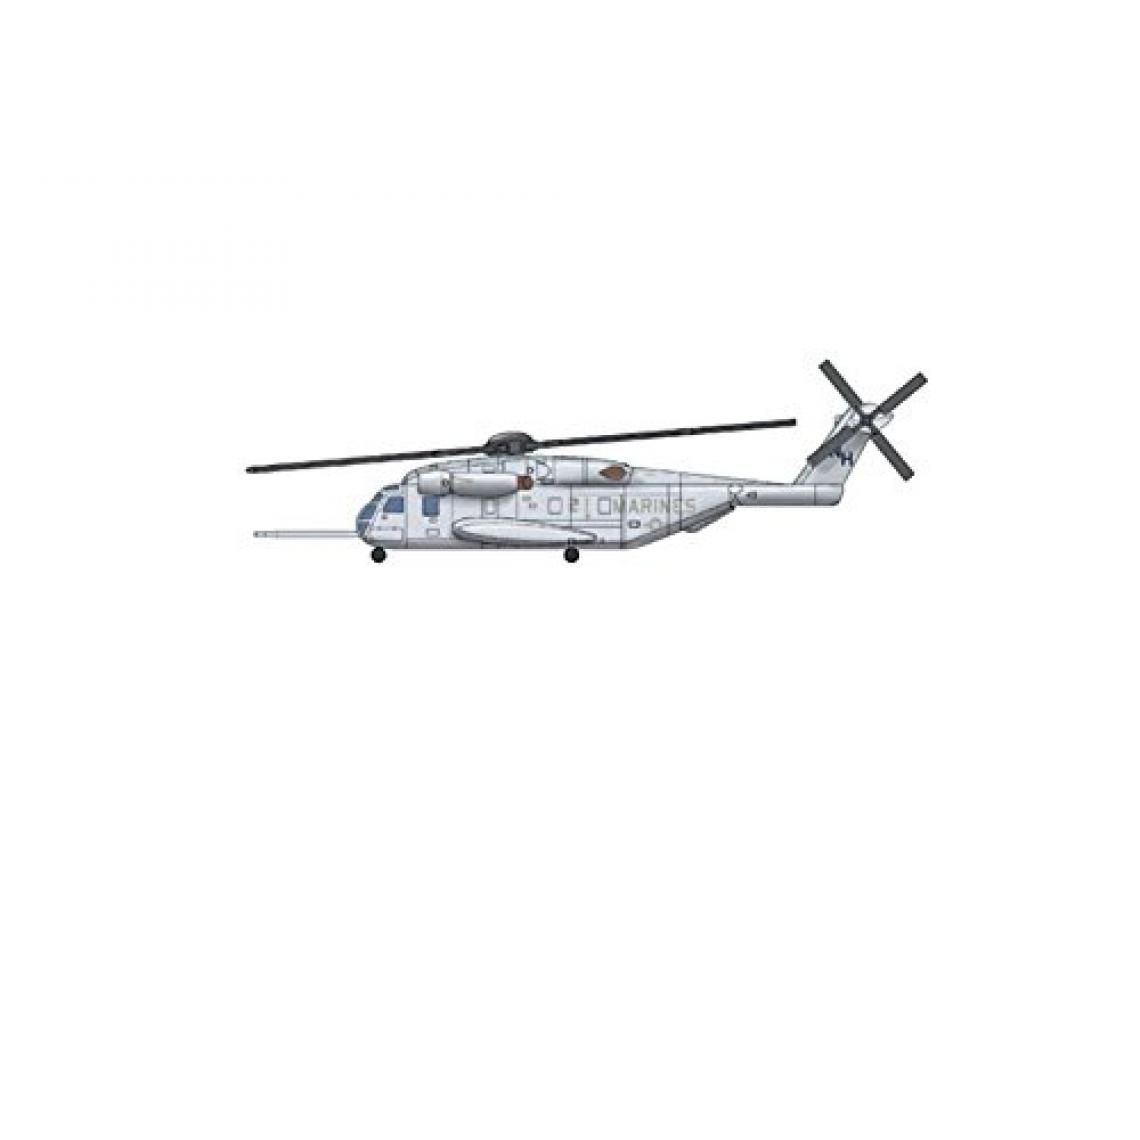 Trumpeter - Trompette Sikorsky CH-53E Maquette Kit, échelle 1/700 - Avions RC